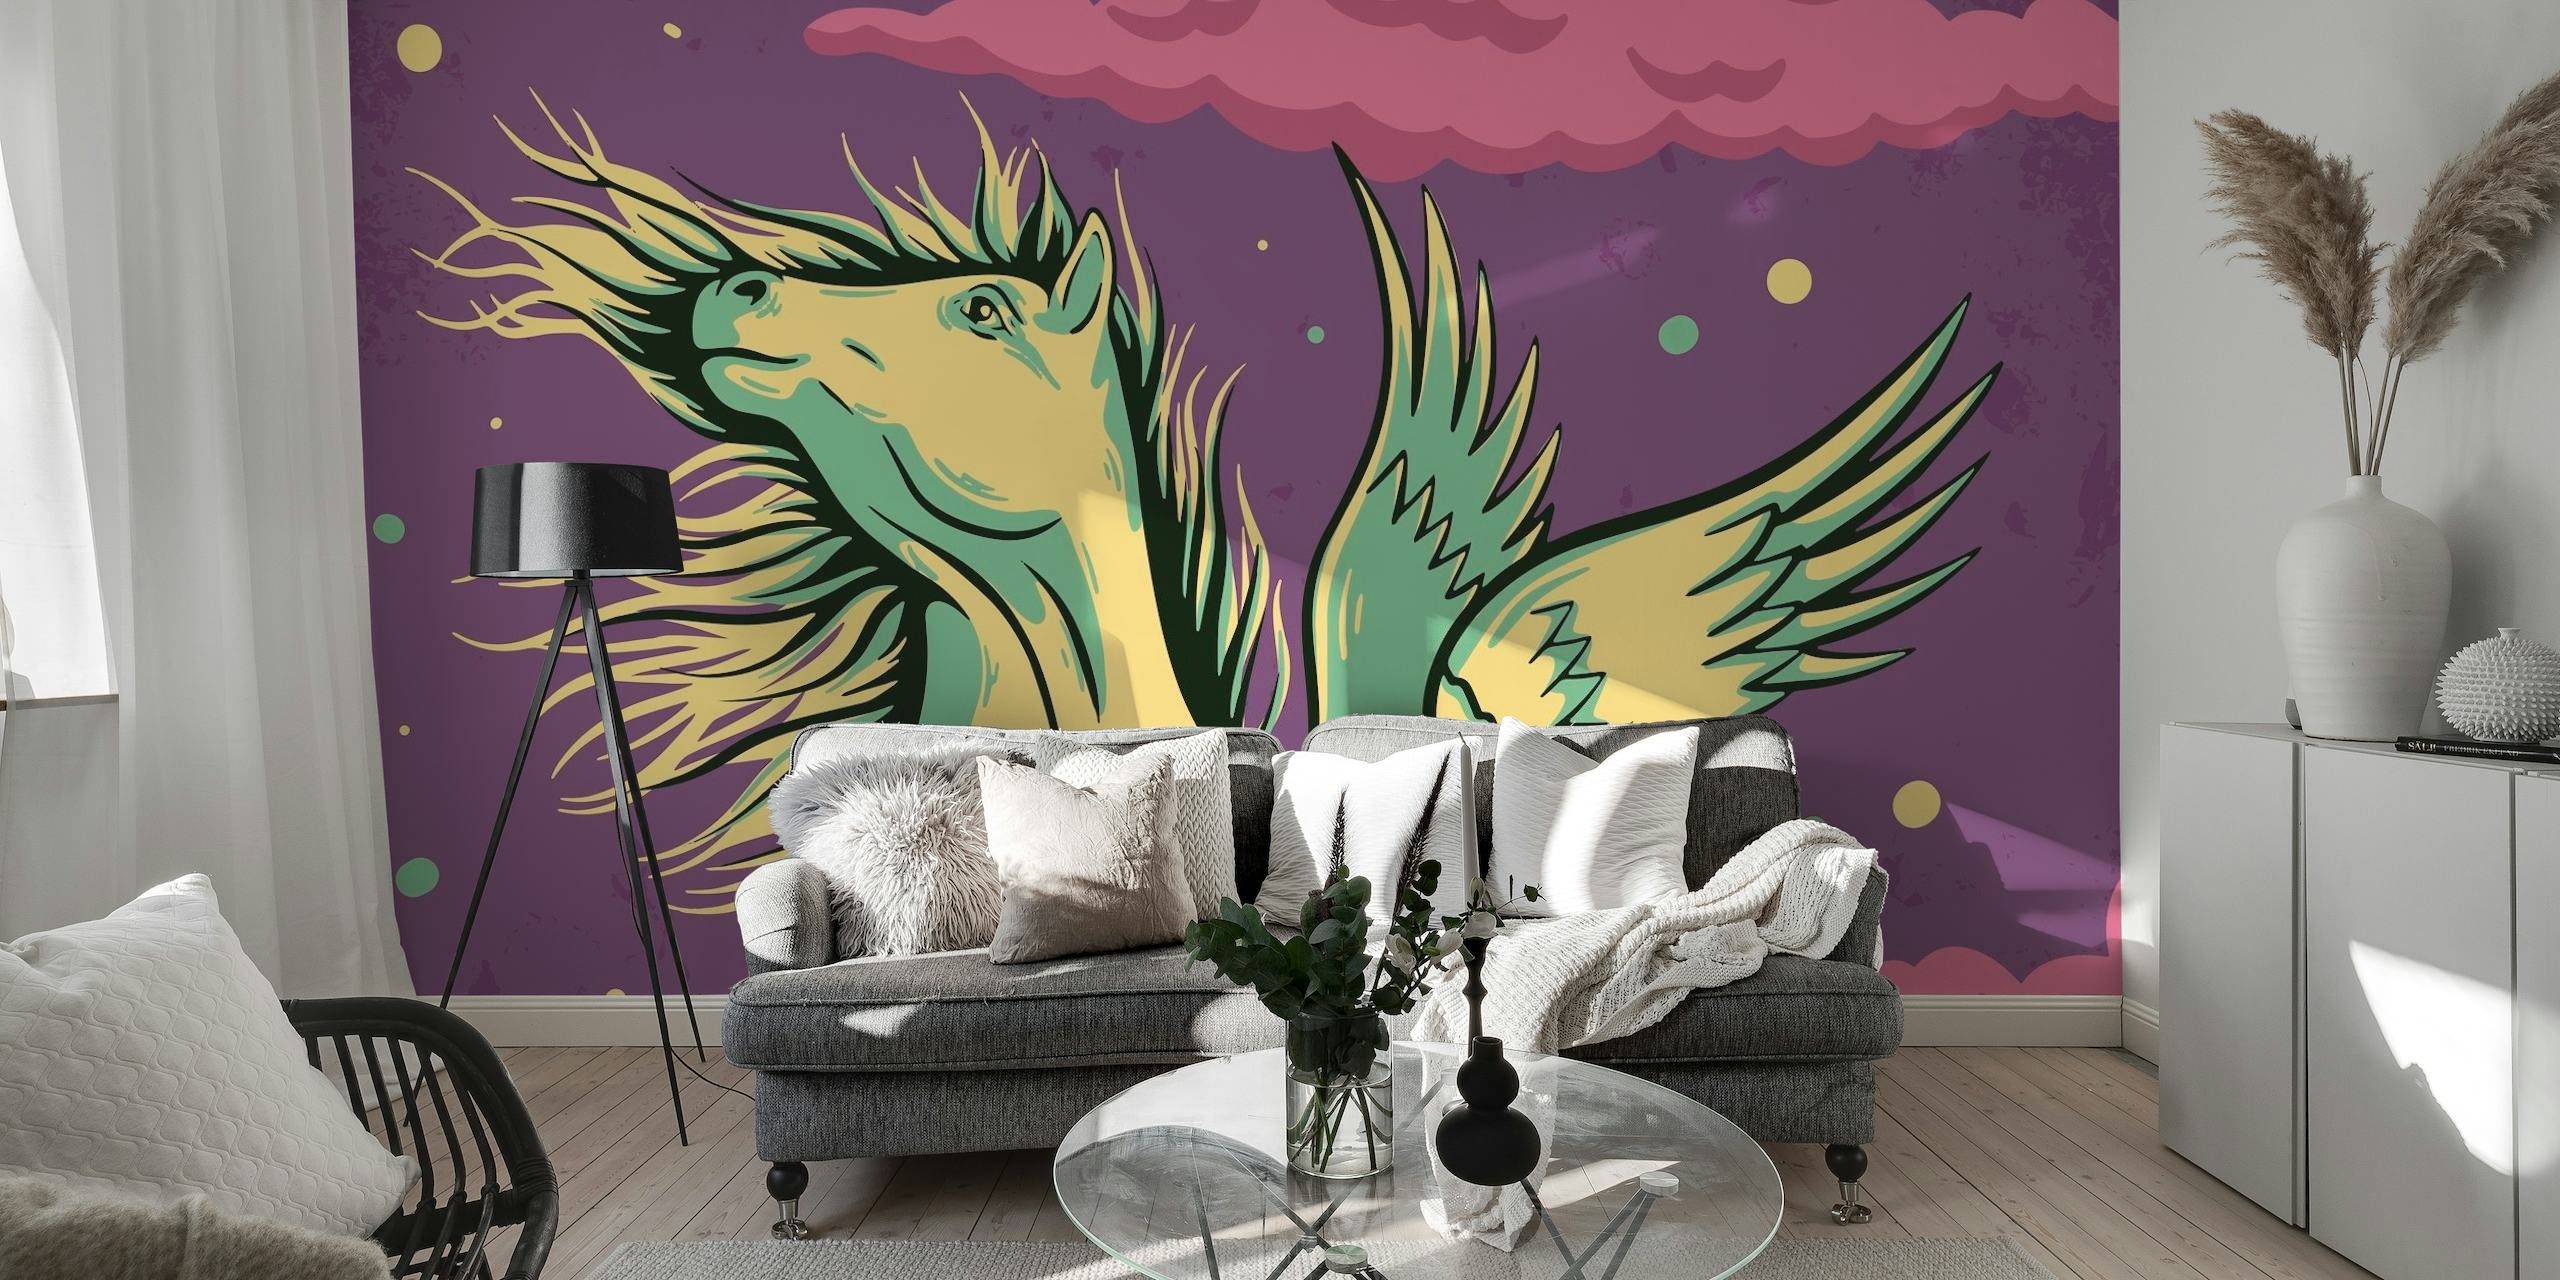 Mural de parede Pegasus com cavalo mítico em um céu roxo estrelado